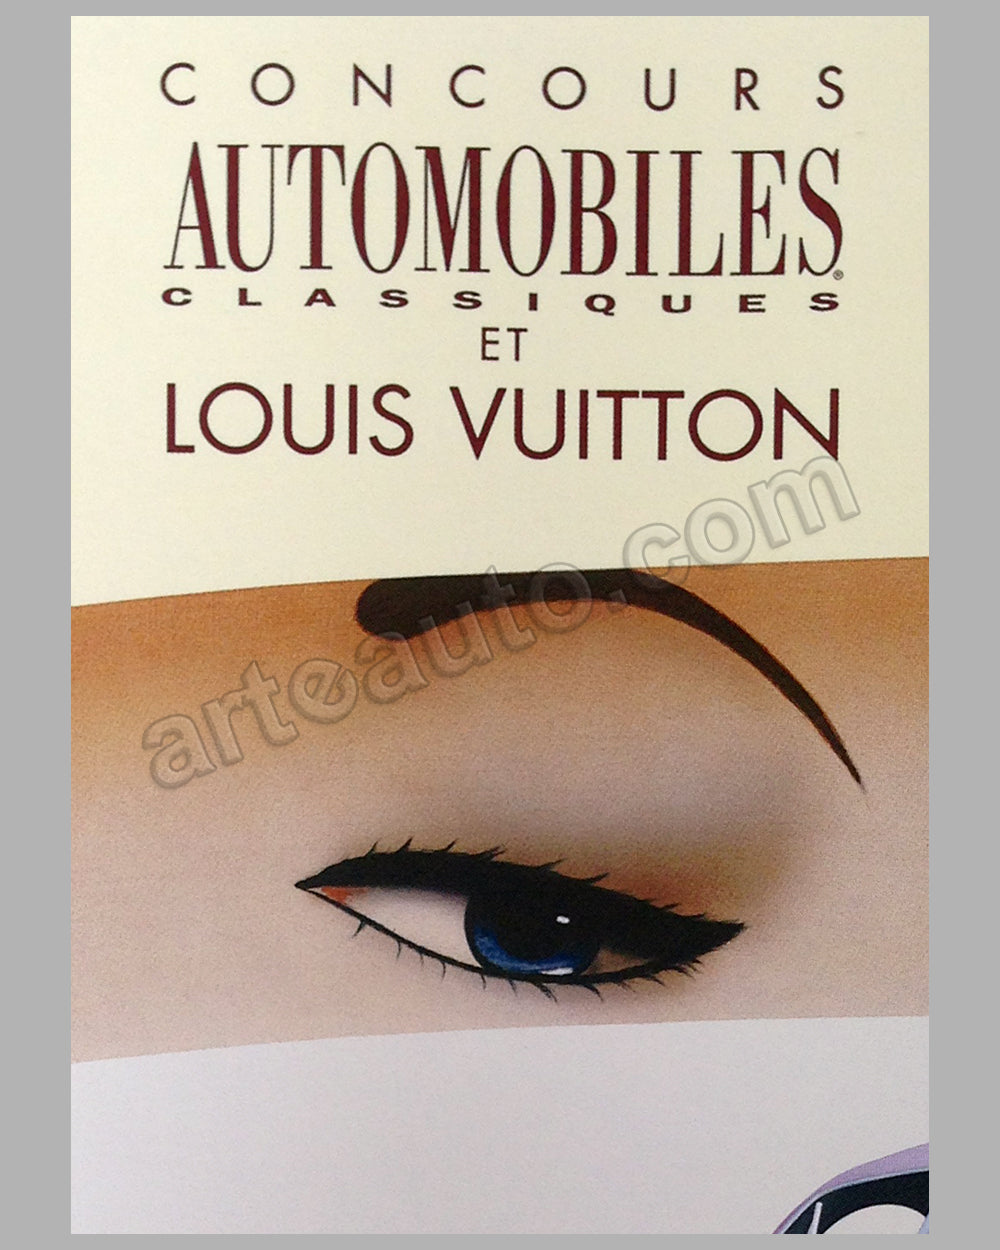 Louis Vuitton Classic Serenissima Run 2012 large original poster